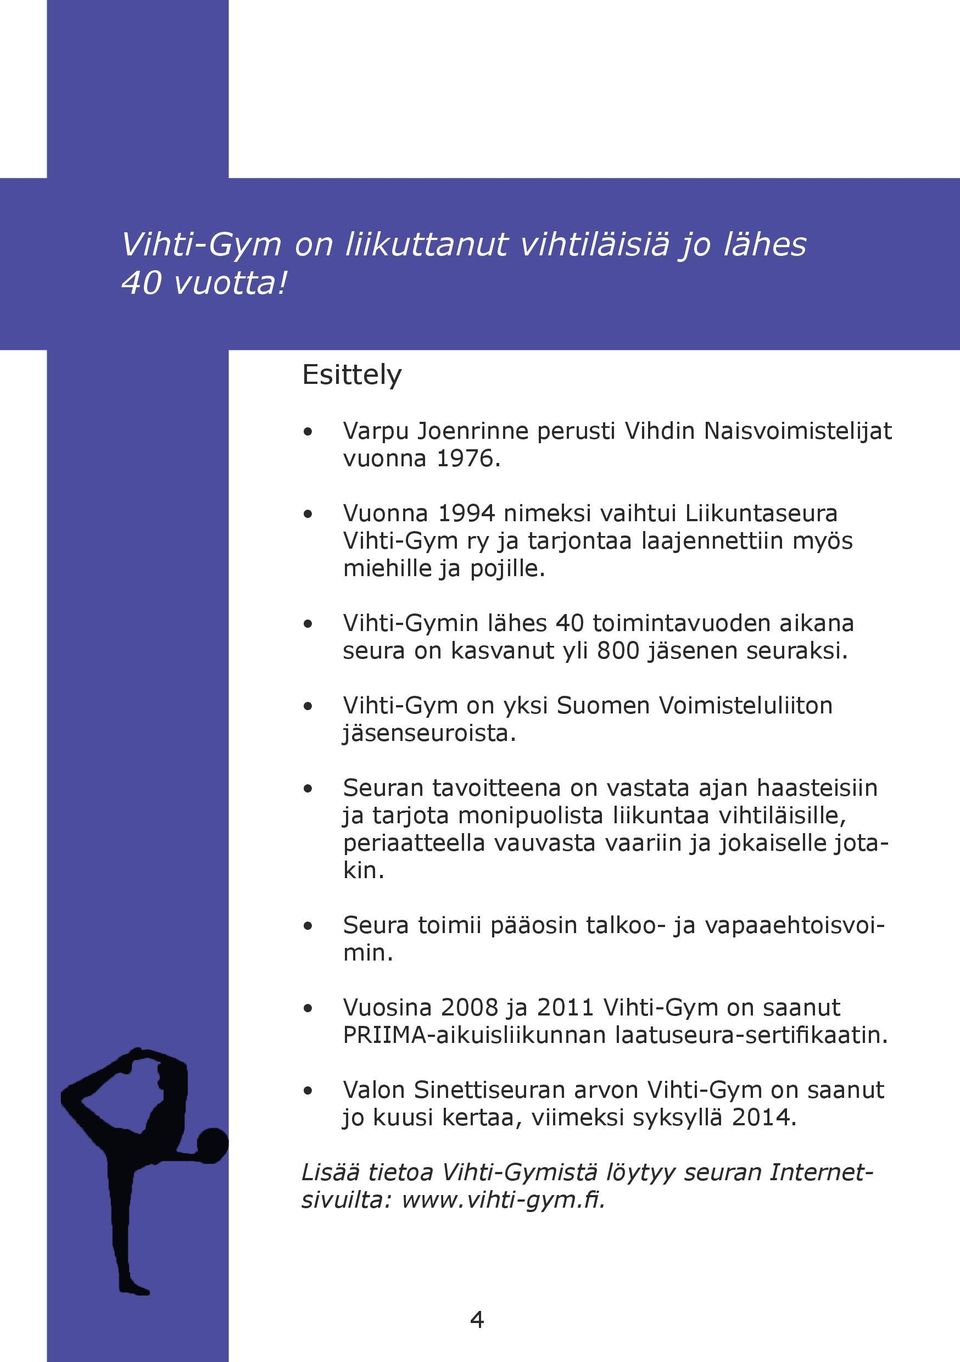 Vihti-Gym on yksi Suomen Voimisteluliiton jäsenseuroista.